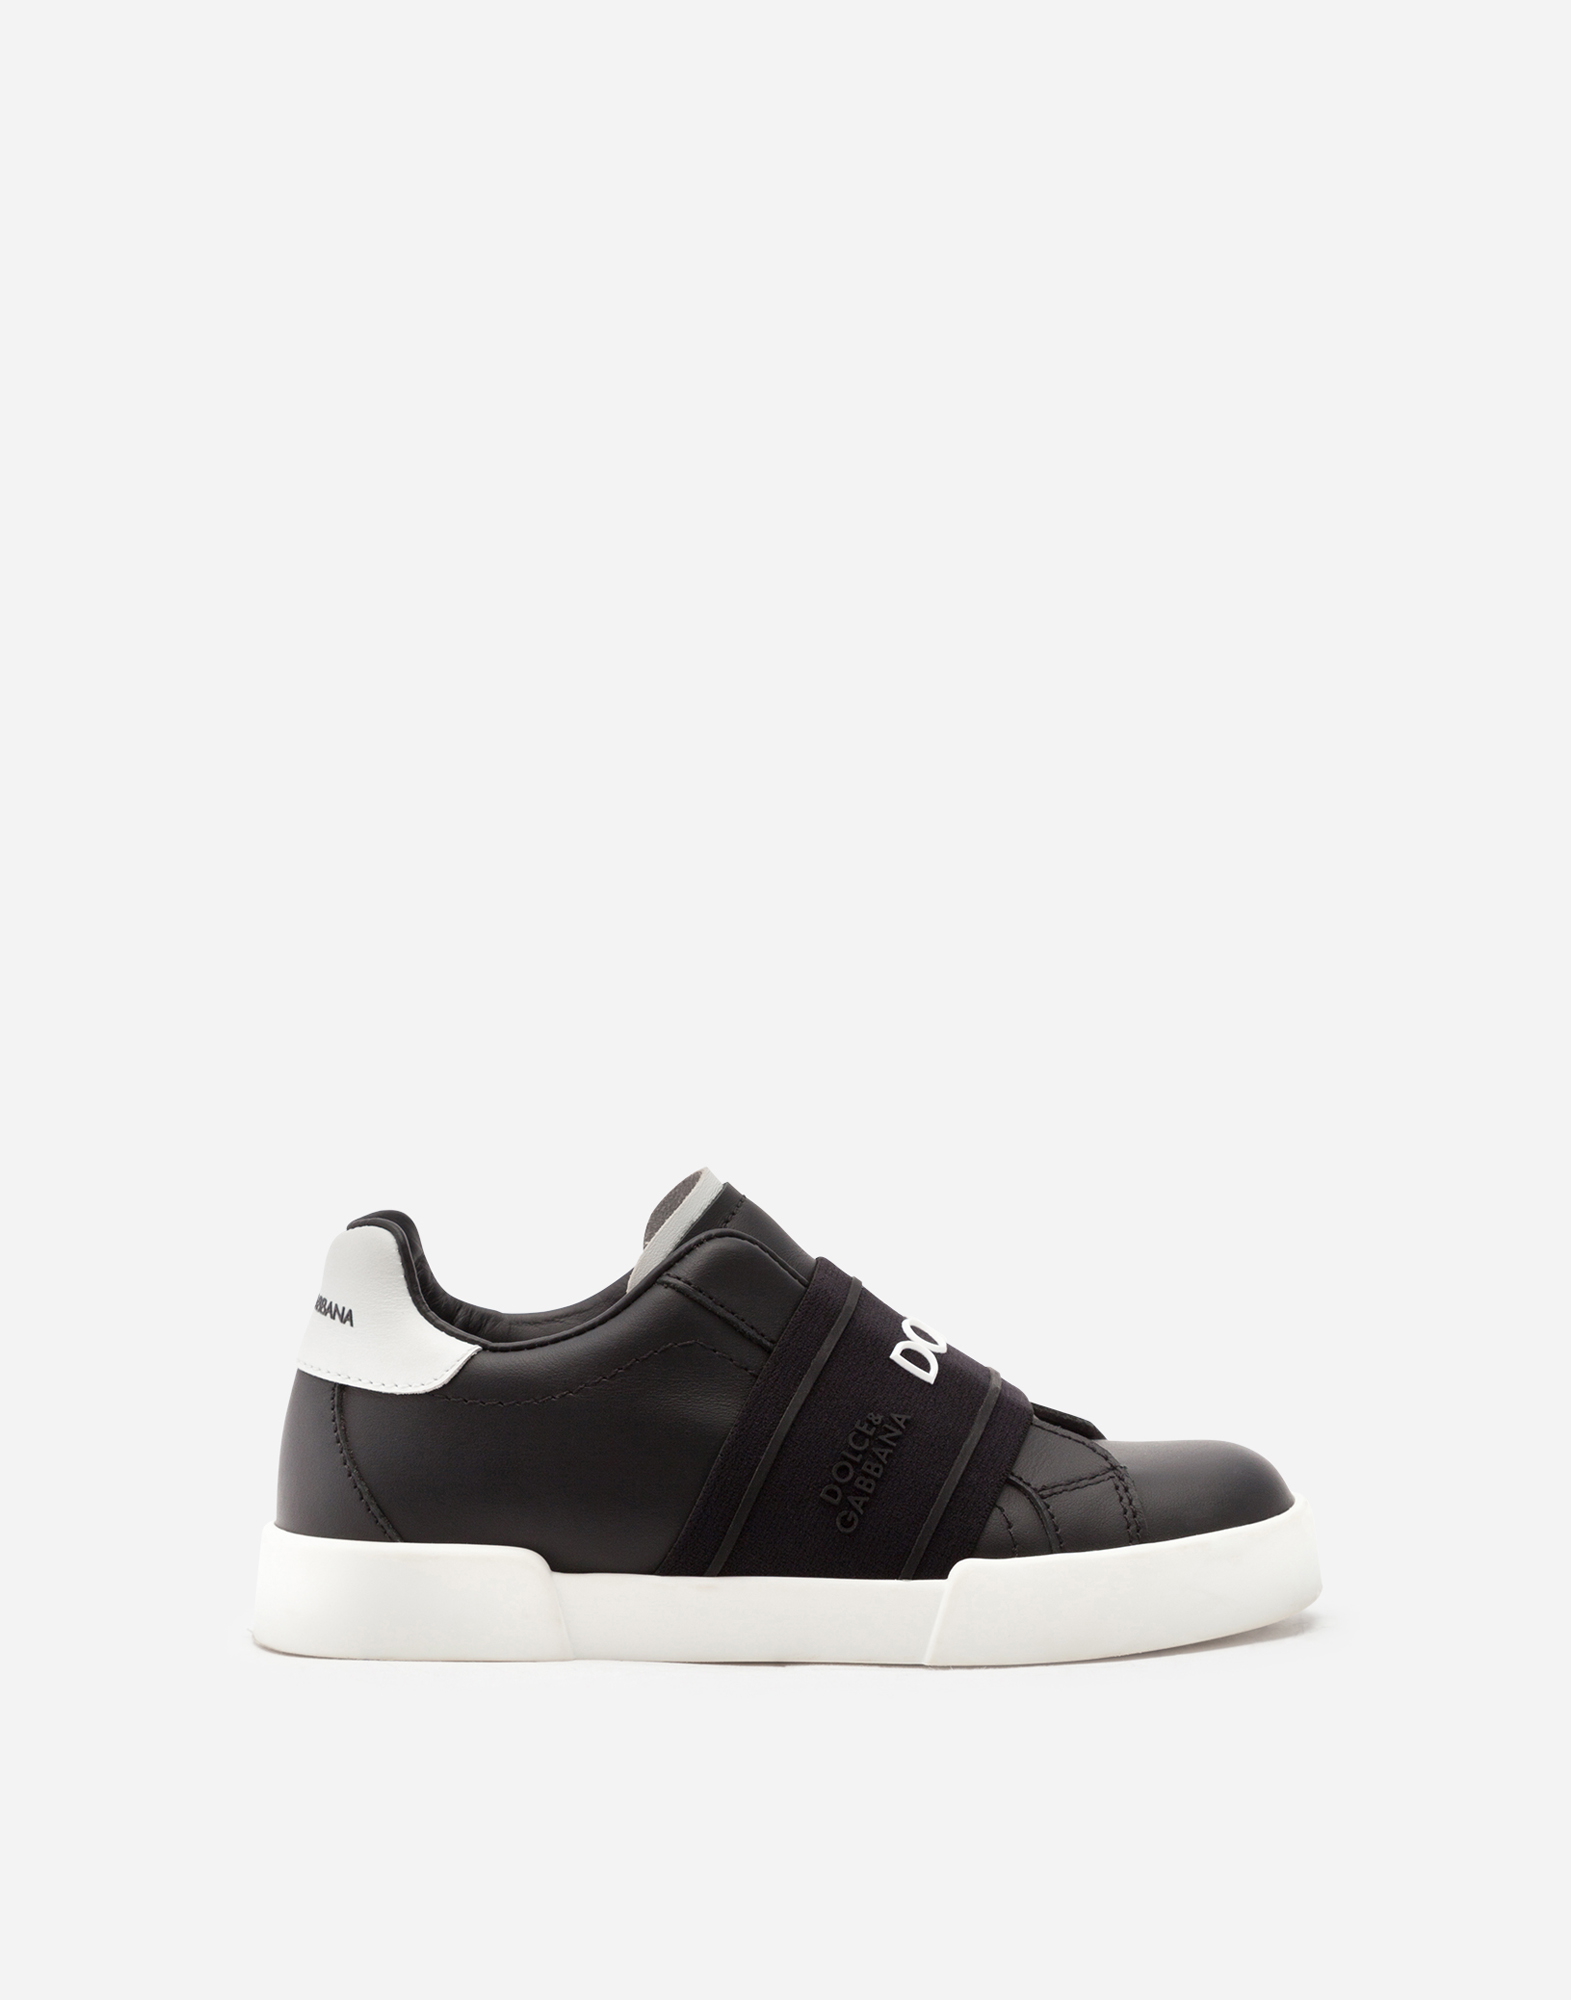 Calfskin slip-on Portofino light sneakers in Black/White